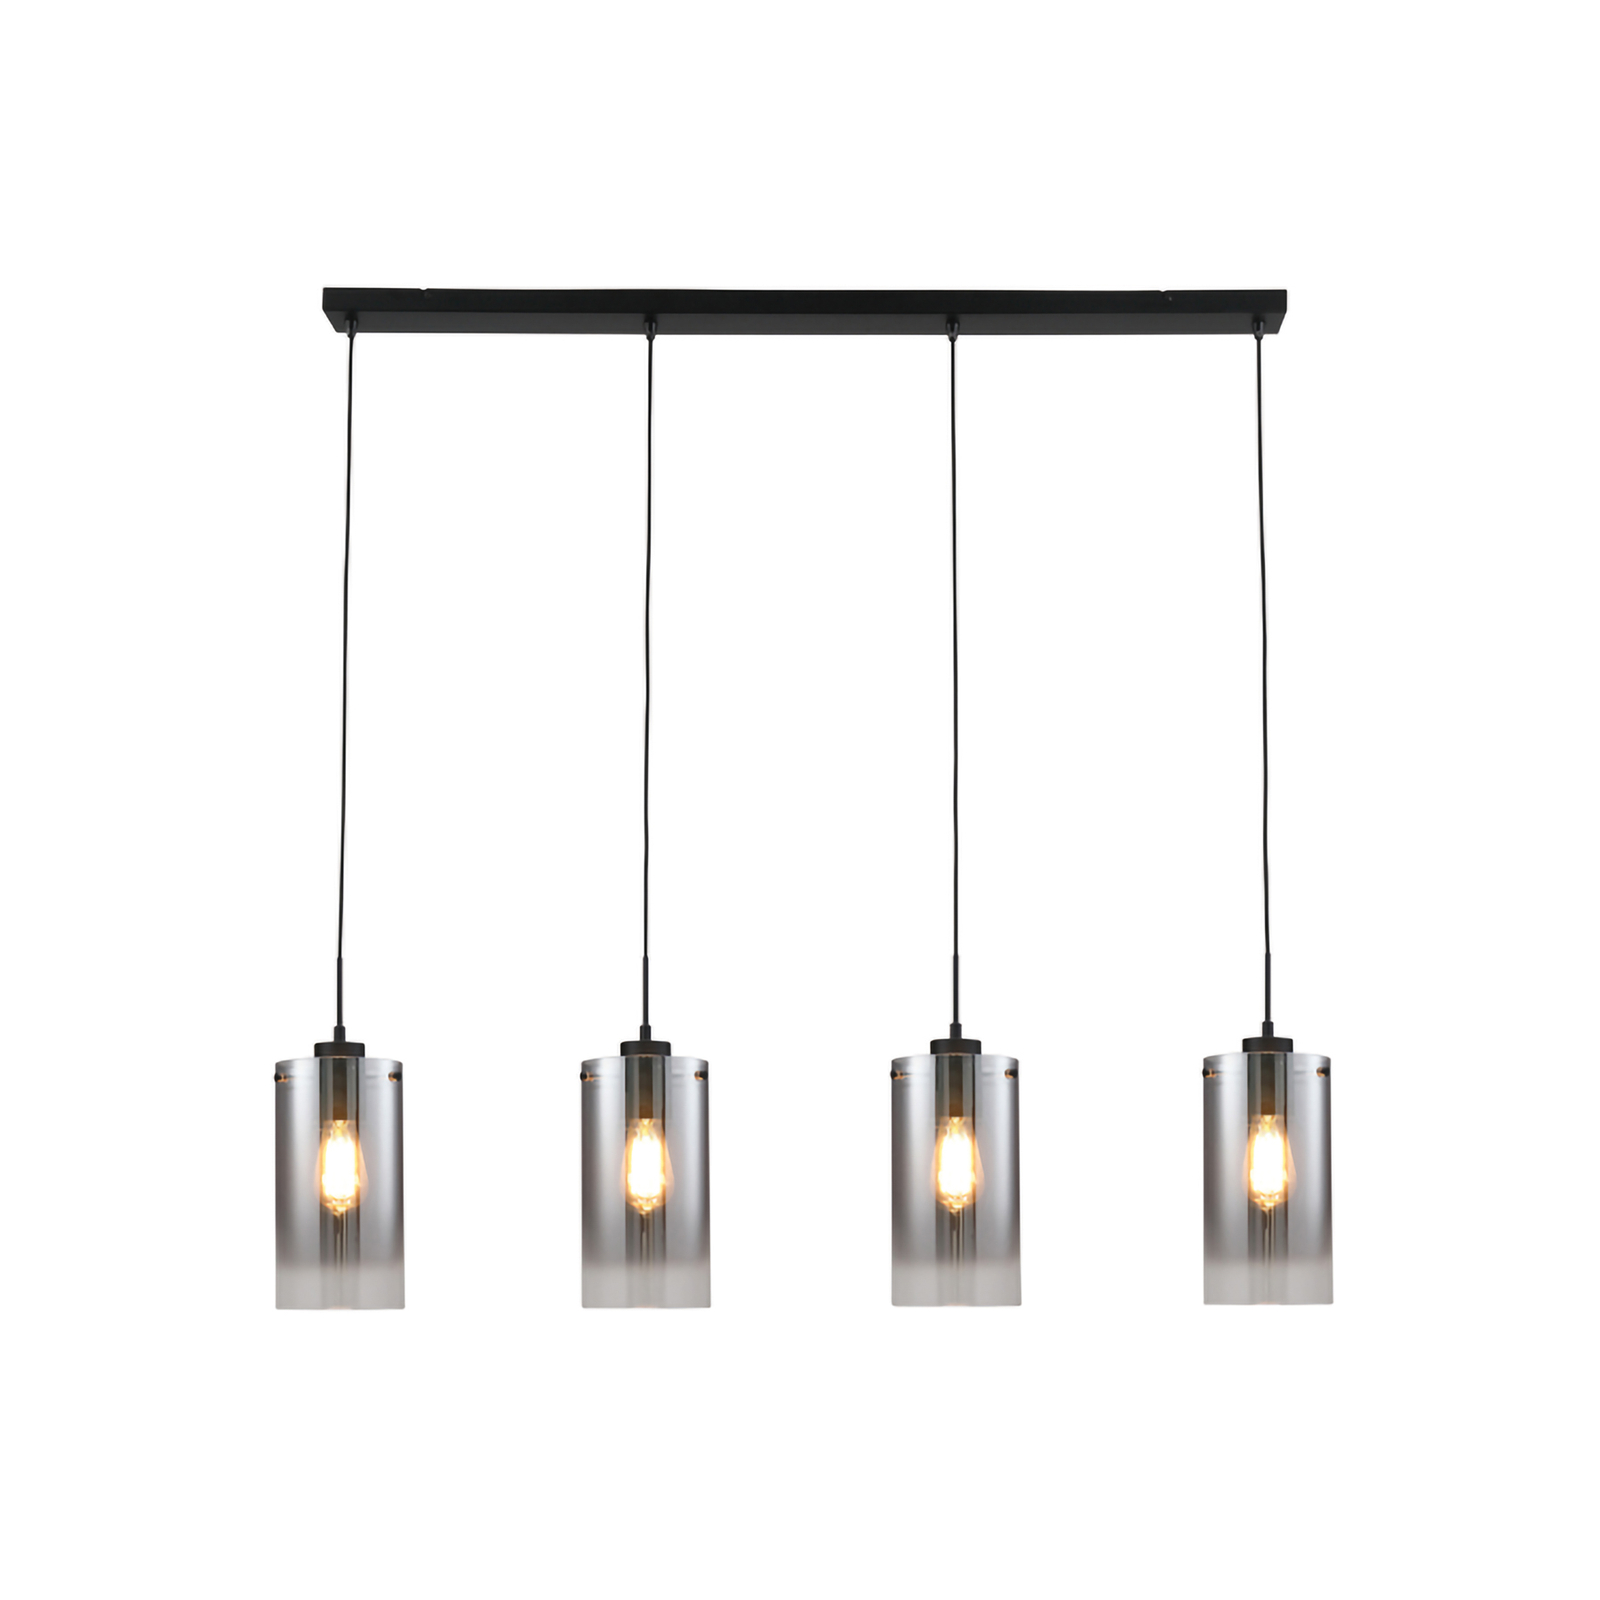 Ventotto hängande lampa, svart/rök, längd 125 cm, 4-lampig.